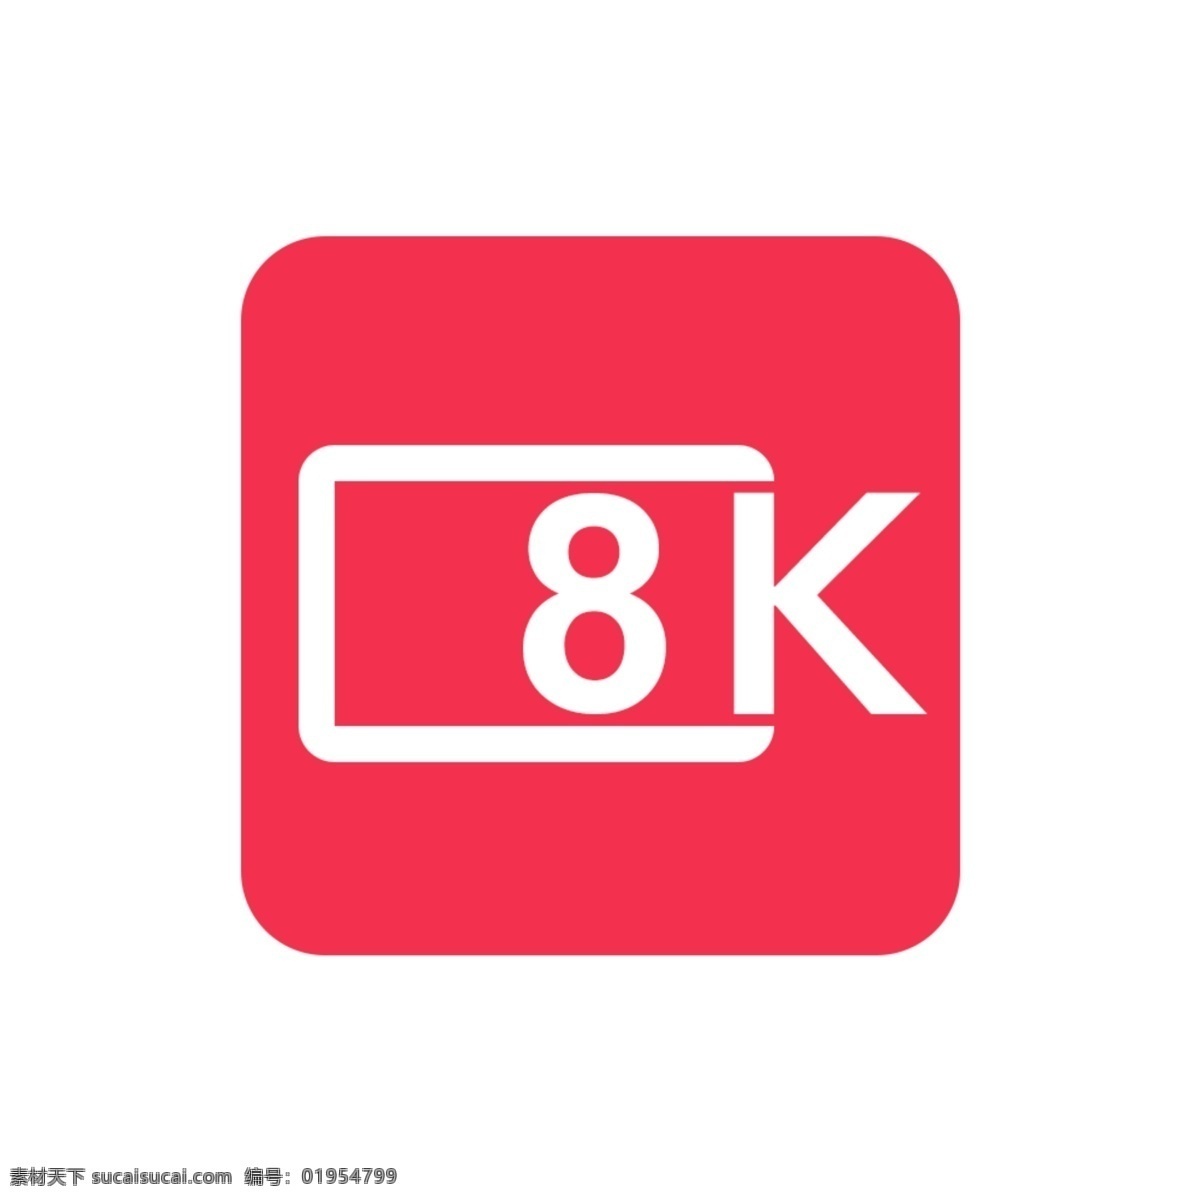 8k 直播 icon app 图标 免抠 8k电视 8k视频